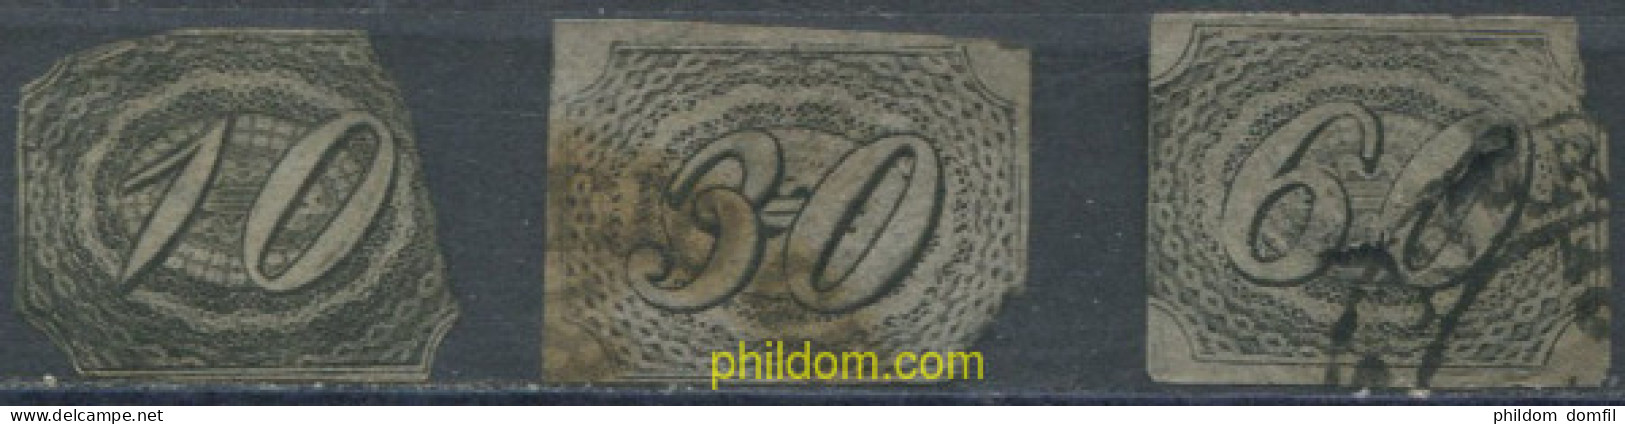 675983 USED BRASIL 1844 CIFRAS TORCIDAS - Unused Stamps